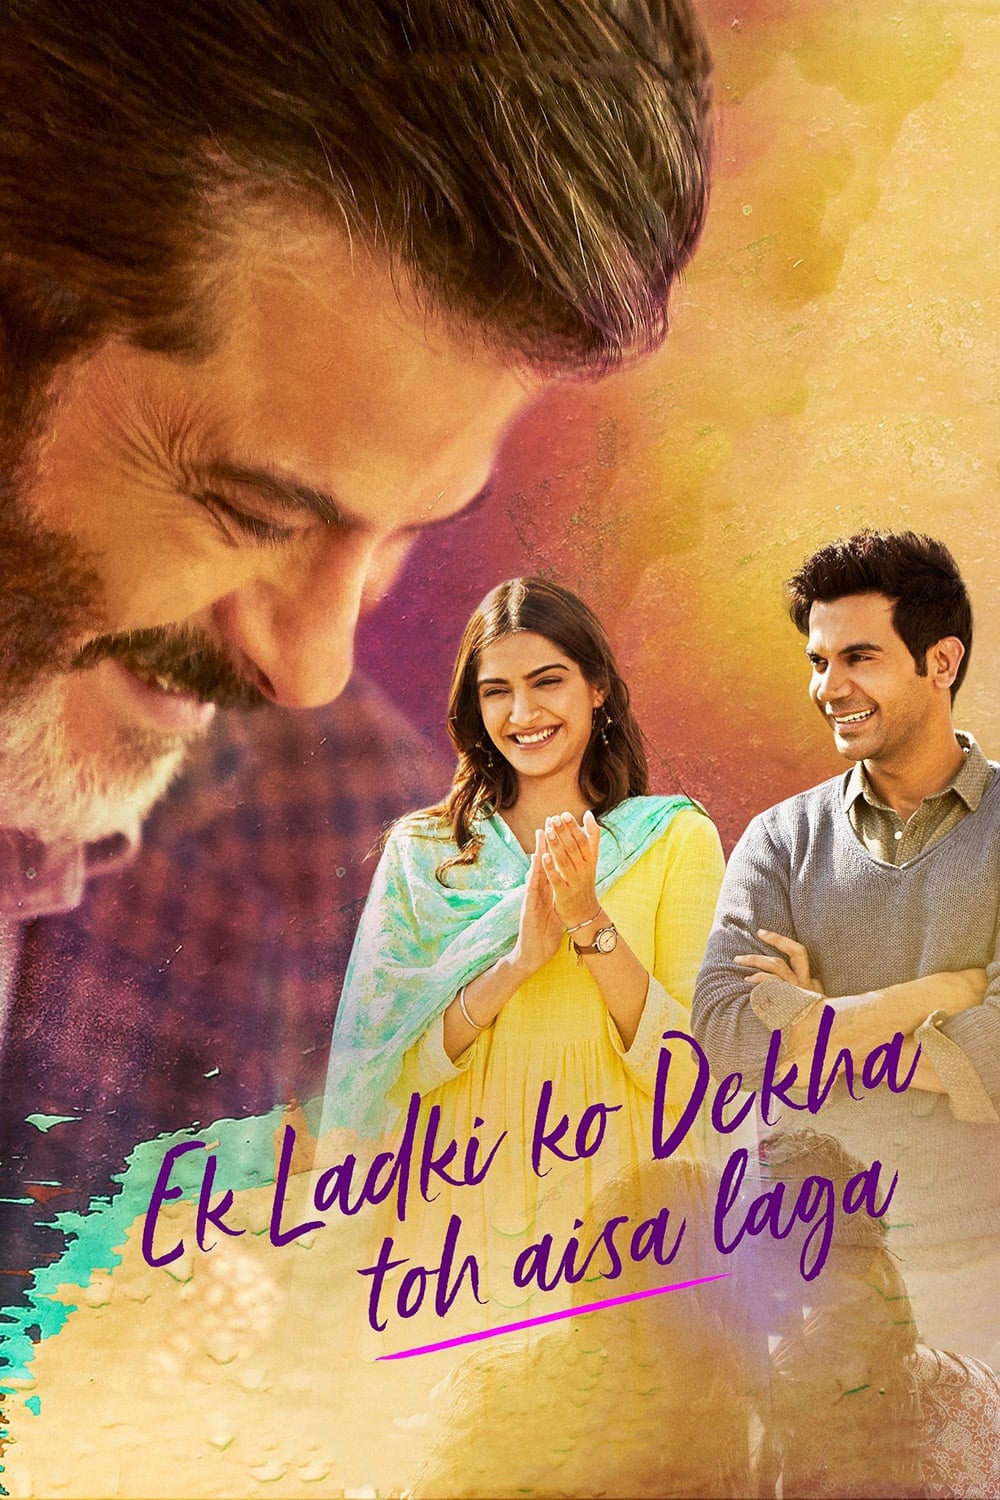 Poster for the movie "Ek Ladki Ko Dekha Toh Aisa Laga"